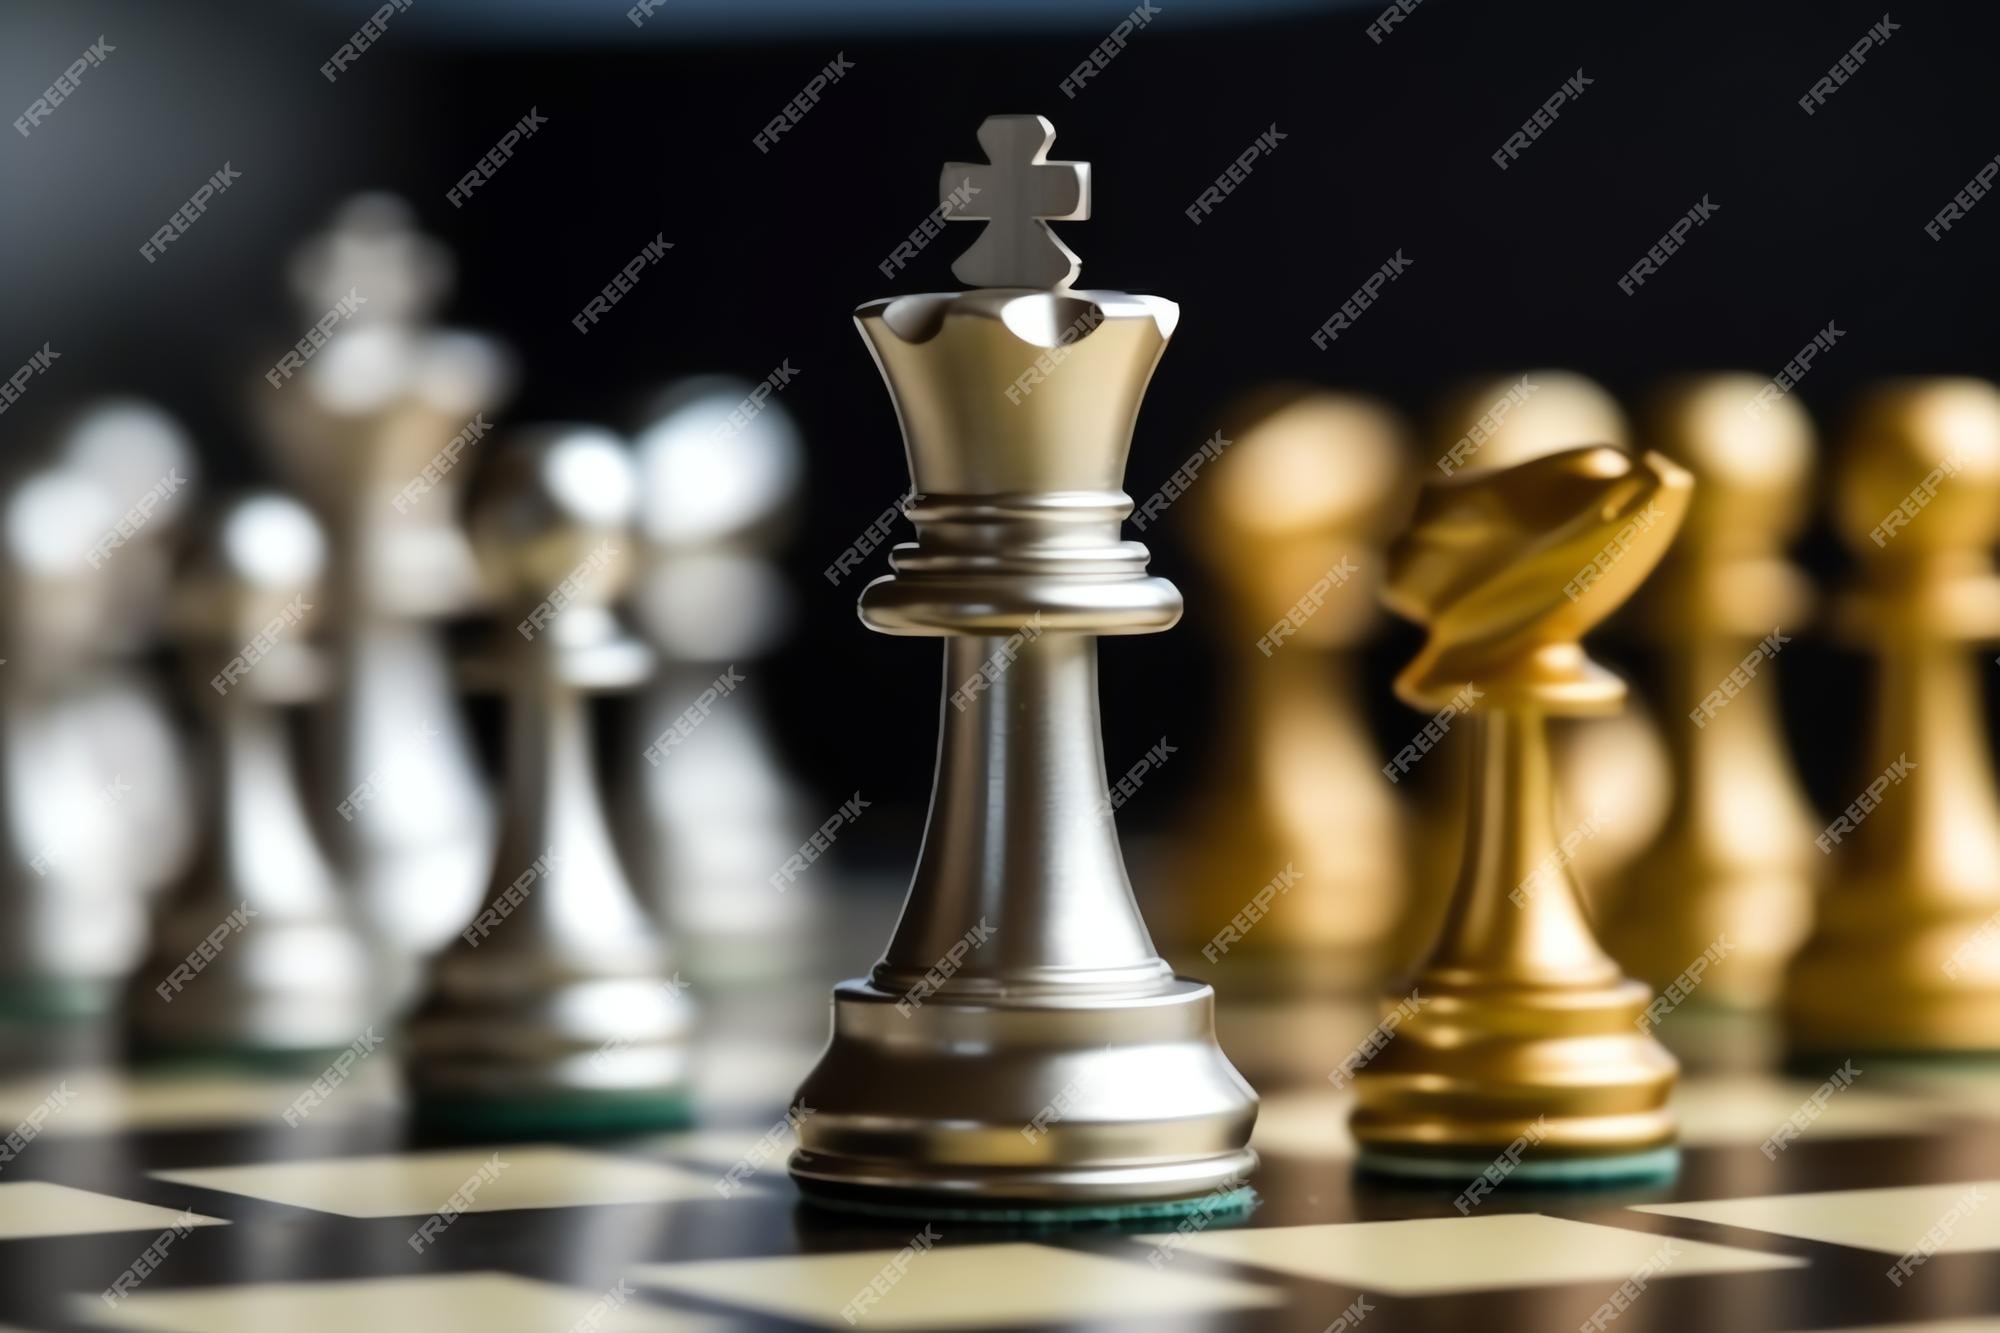 Conceito de estratégia de negócios. o cavaleiro dá o último passo final  para fazer o xeque-mate no xadrez, caindo como rei.